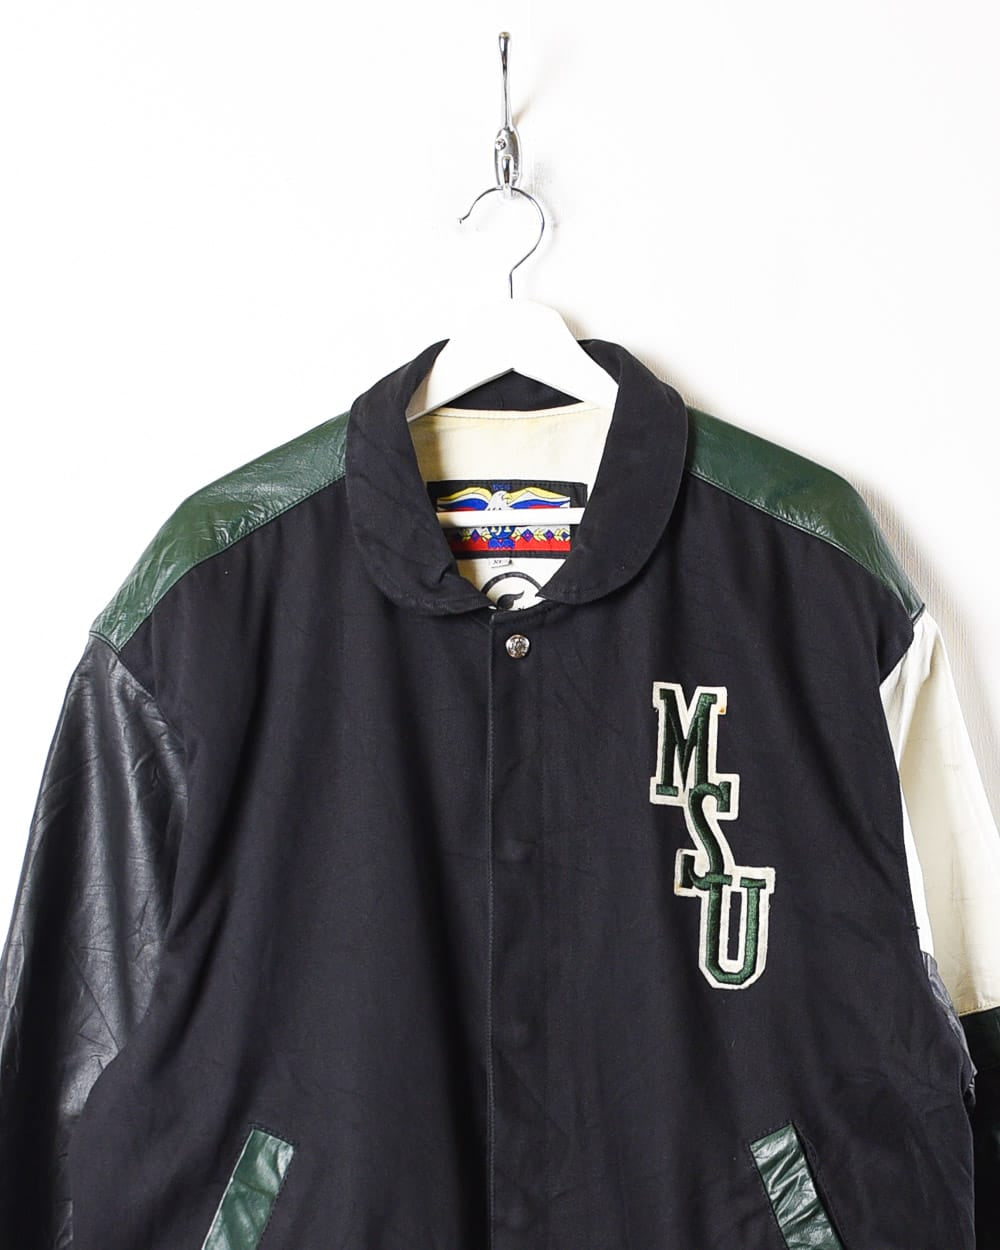 Black Jeff Hamilton MSU Leather Varsity Jacket - X-Large